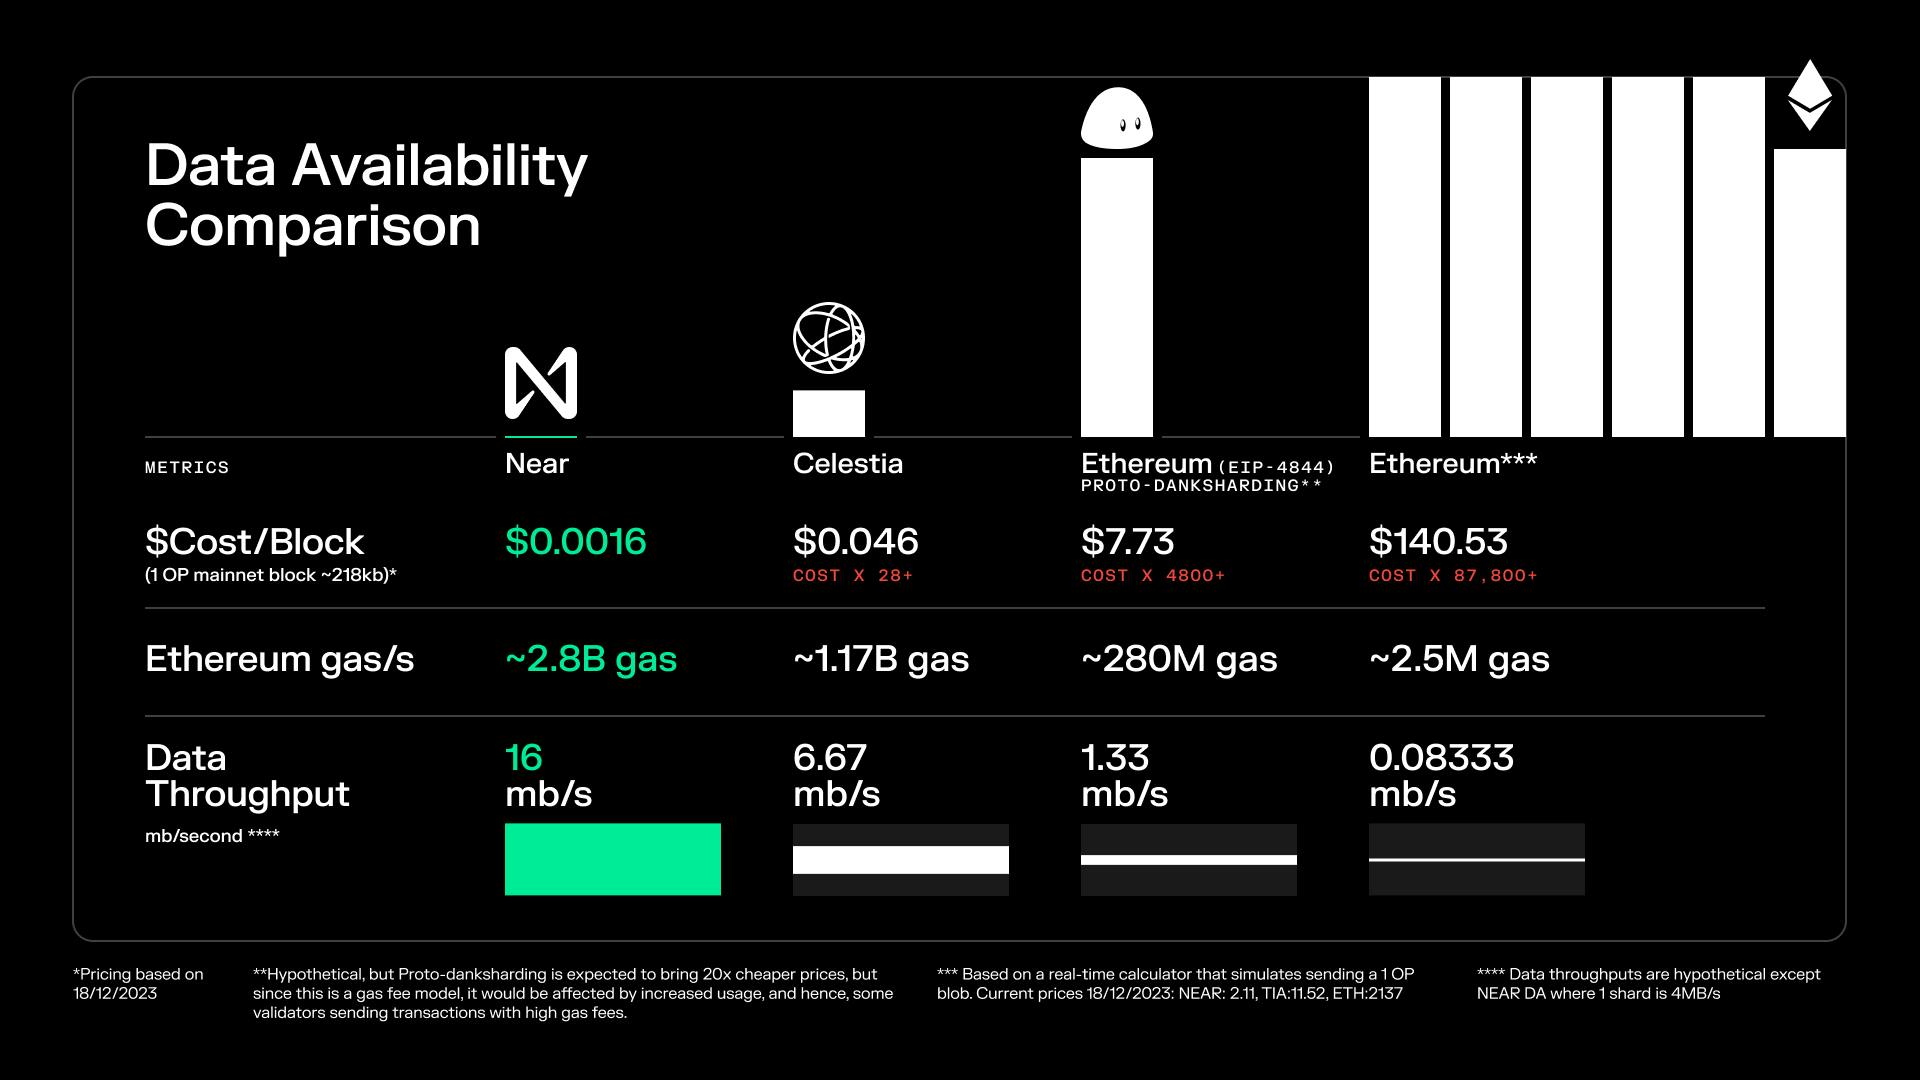 Figure 3: Data availability cost comparison